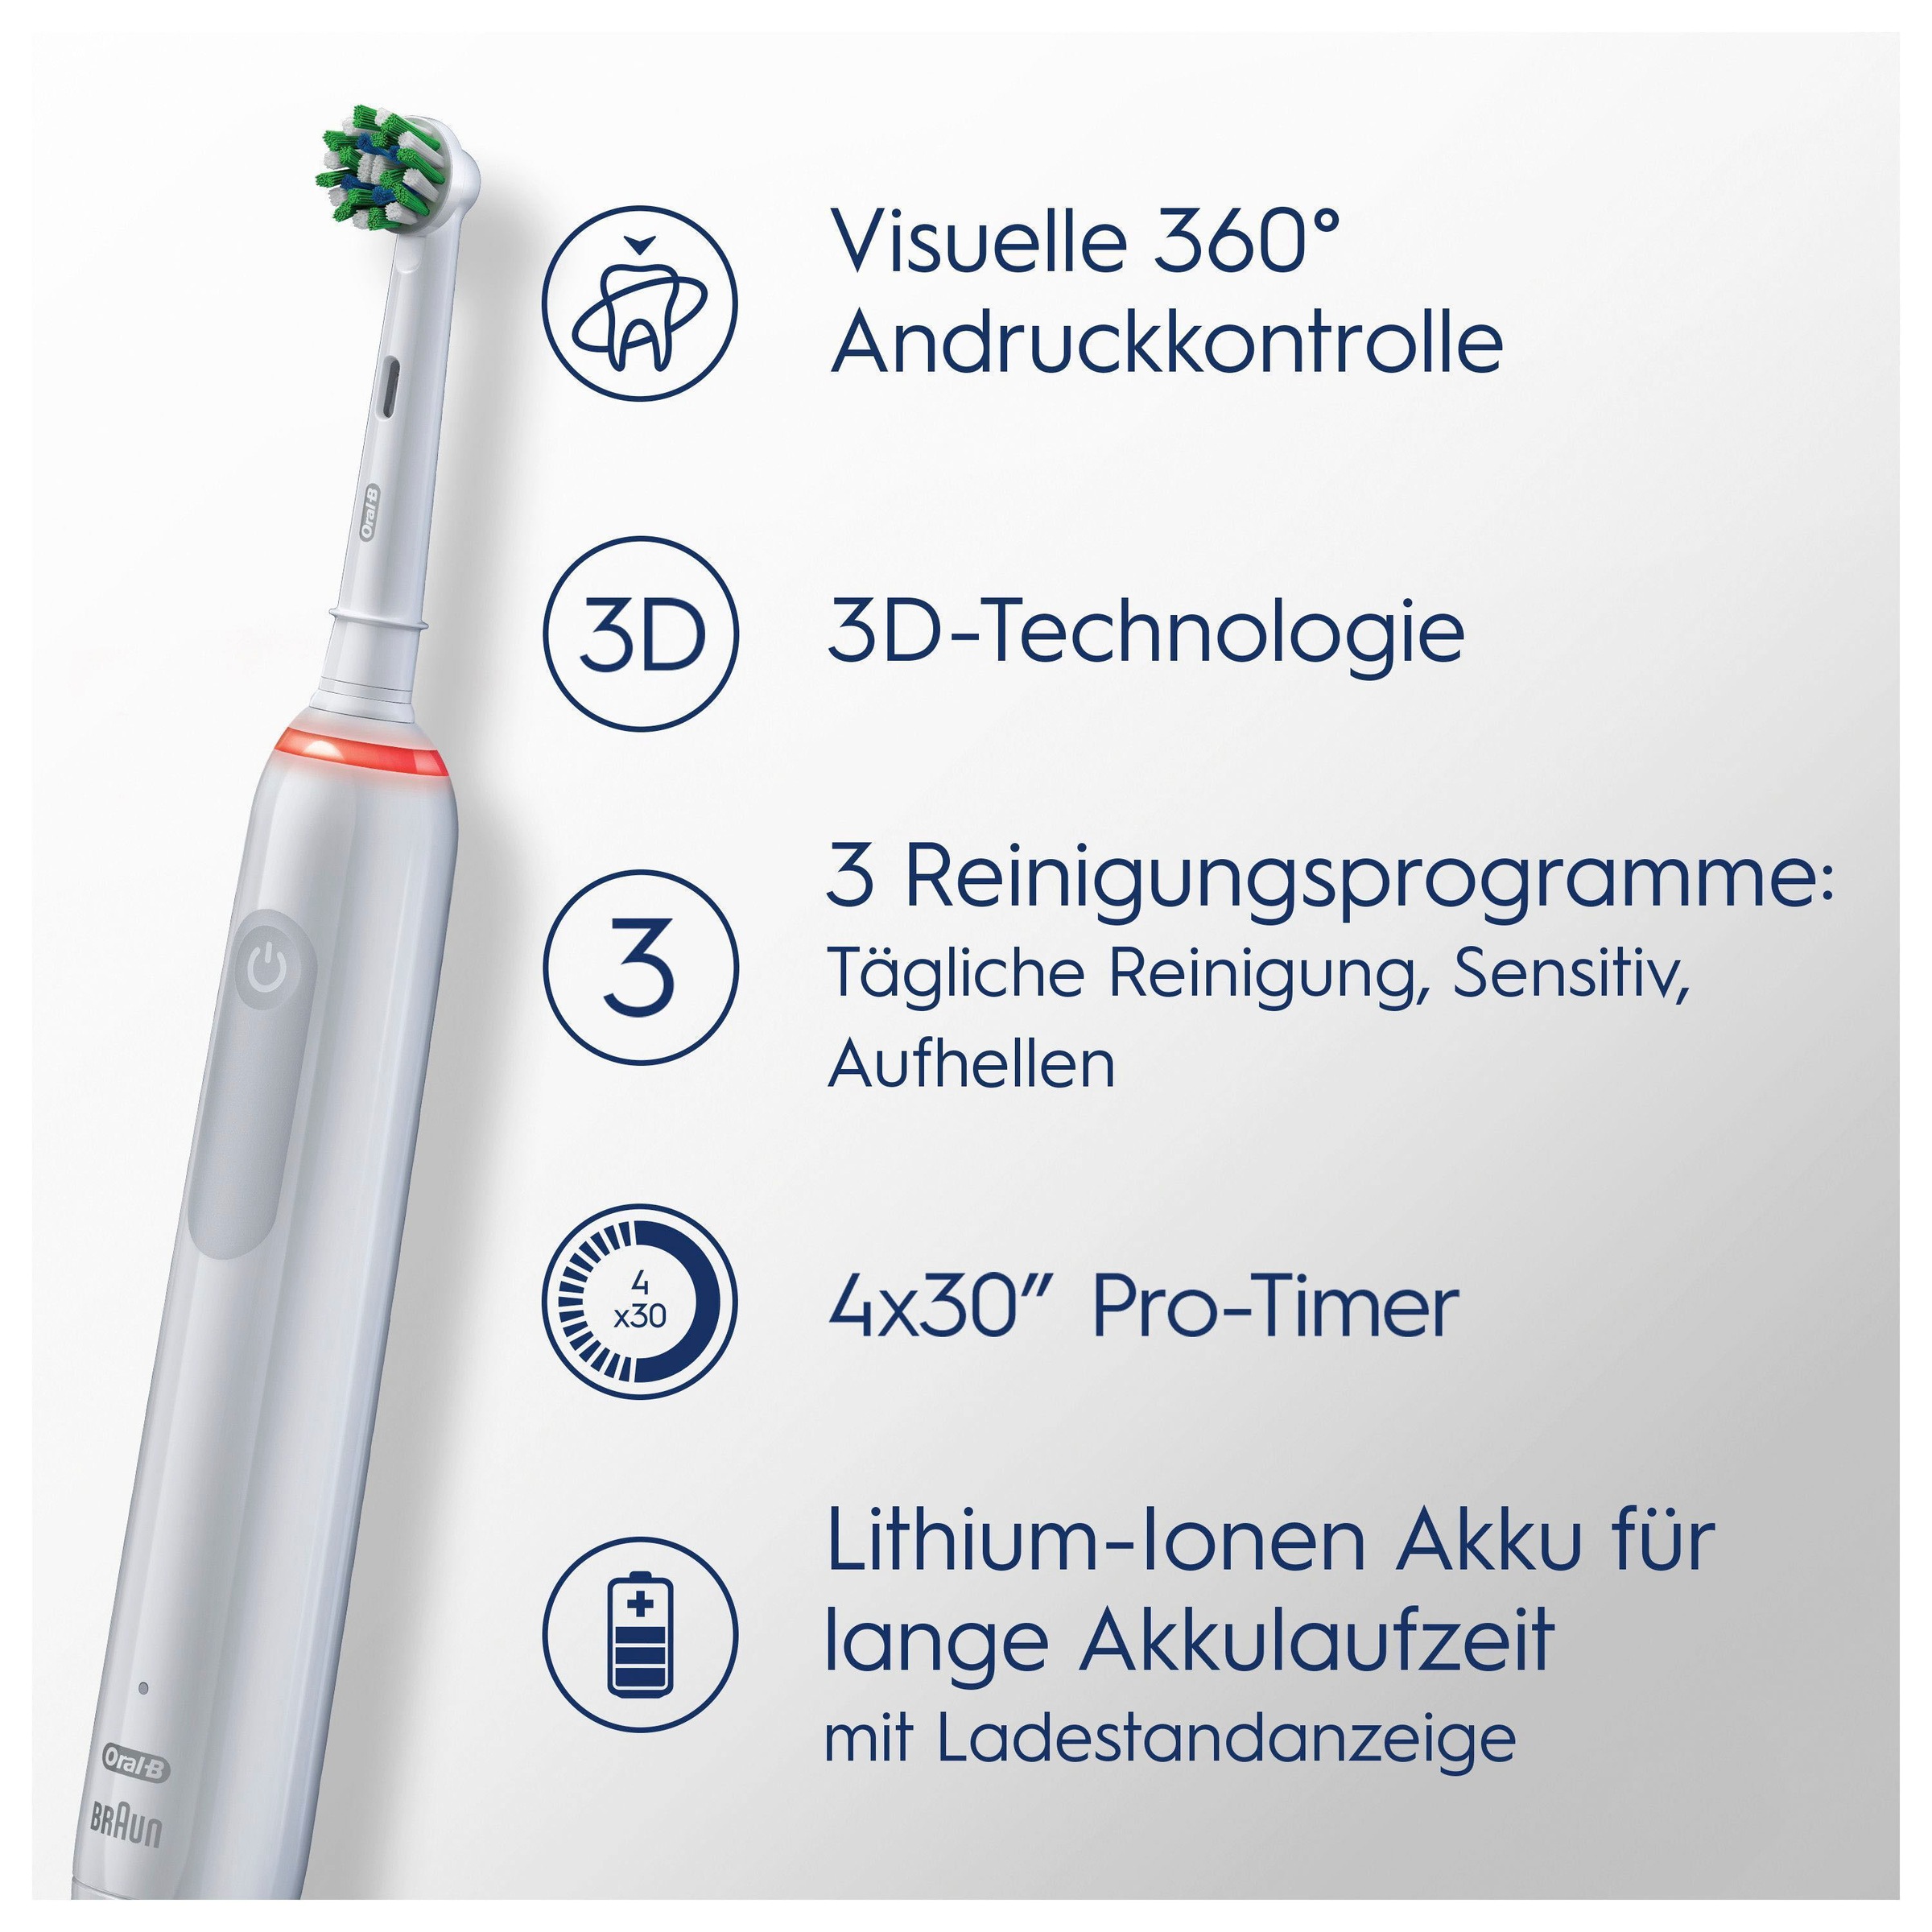 Oral-B Elektrische Zahnbürste »3 3000«, 2 St. Aufsteckbürsten, 3 Putzmodi